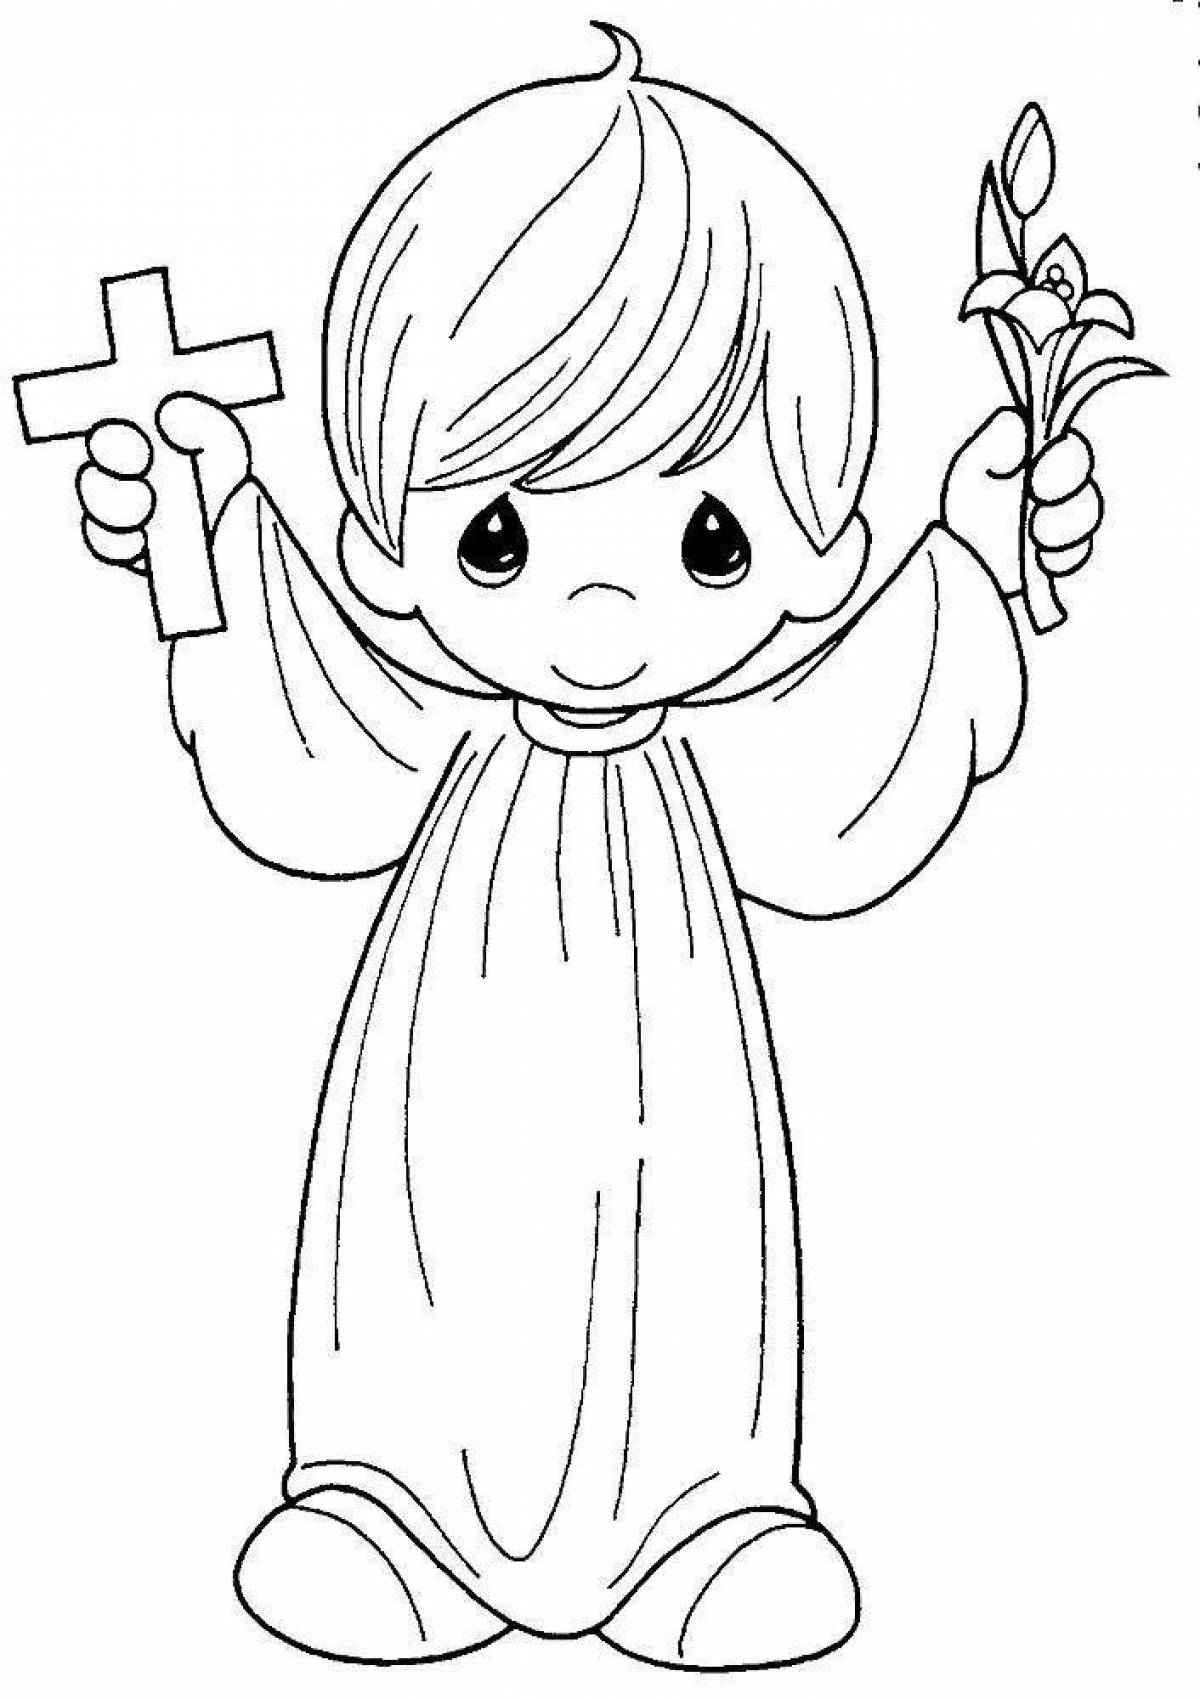 Лучистая раскраска крещение для детей православных